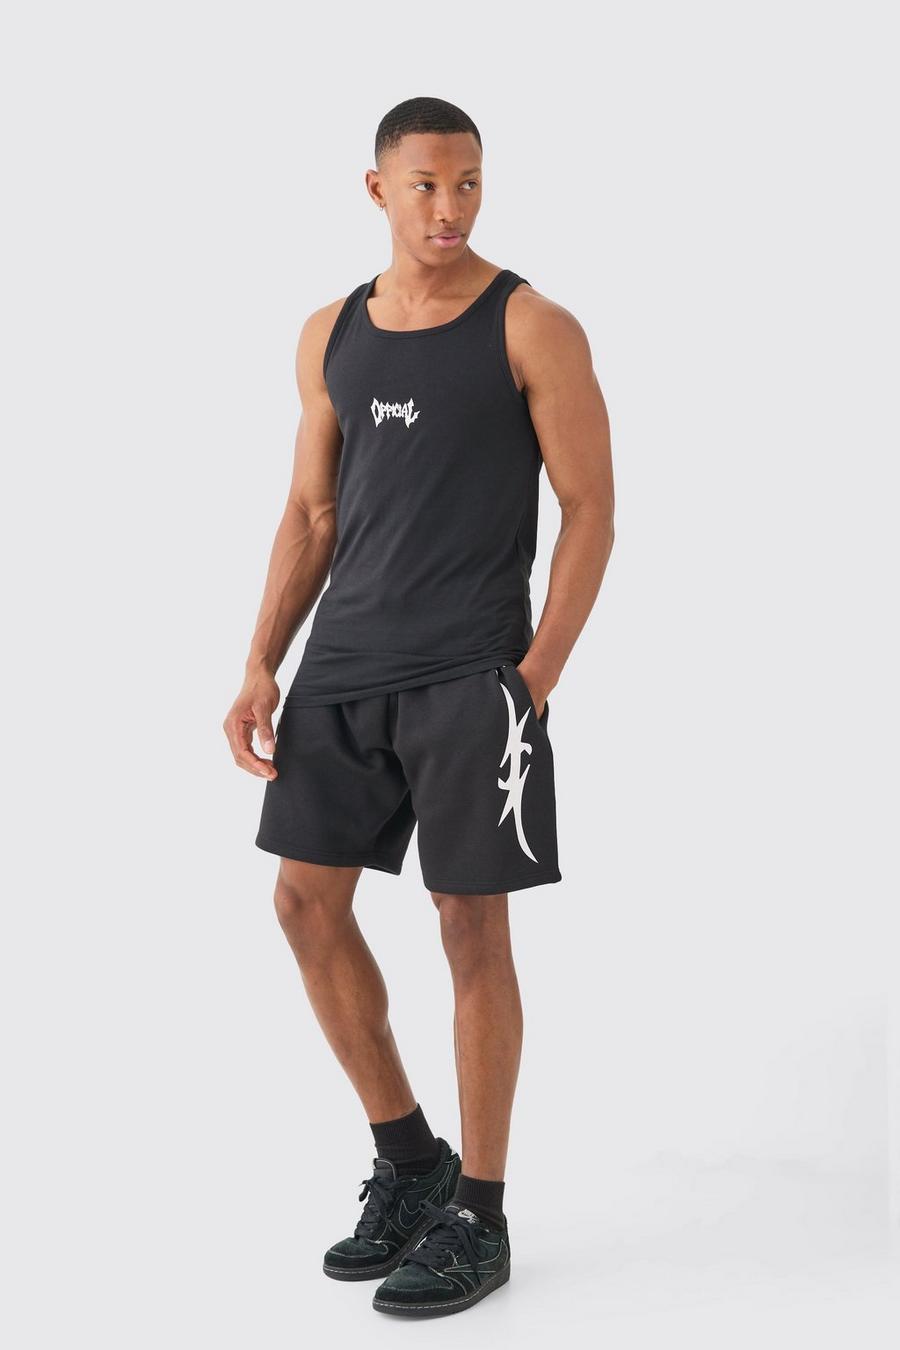 Muscle Fit Graphic Official Vest & Shorts Set, Black